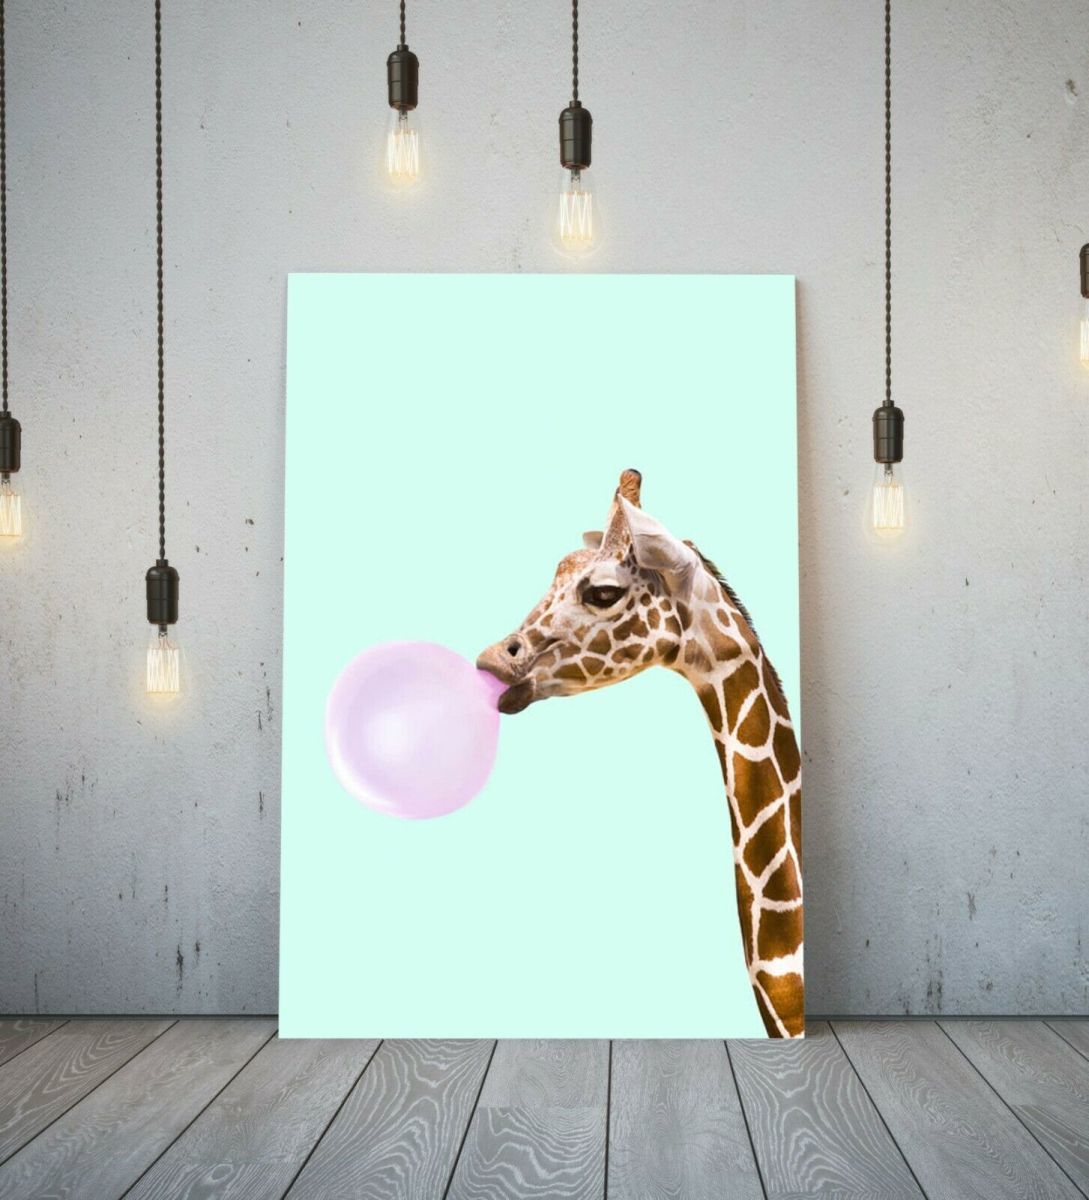 Жираф Высокое качество холст рамка плакат картина А1 художественная панель скандинавский жираф животное животное за рубежом фото товары живопись разное интерьер, Печатные материалы, Плакат, другие